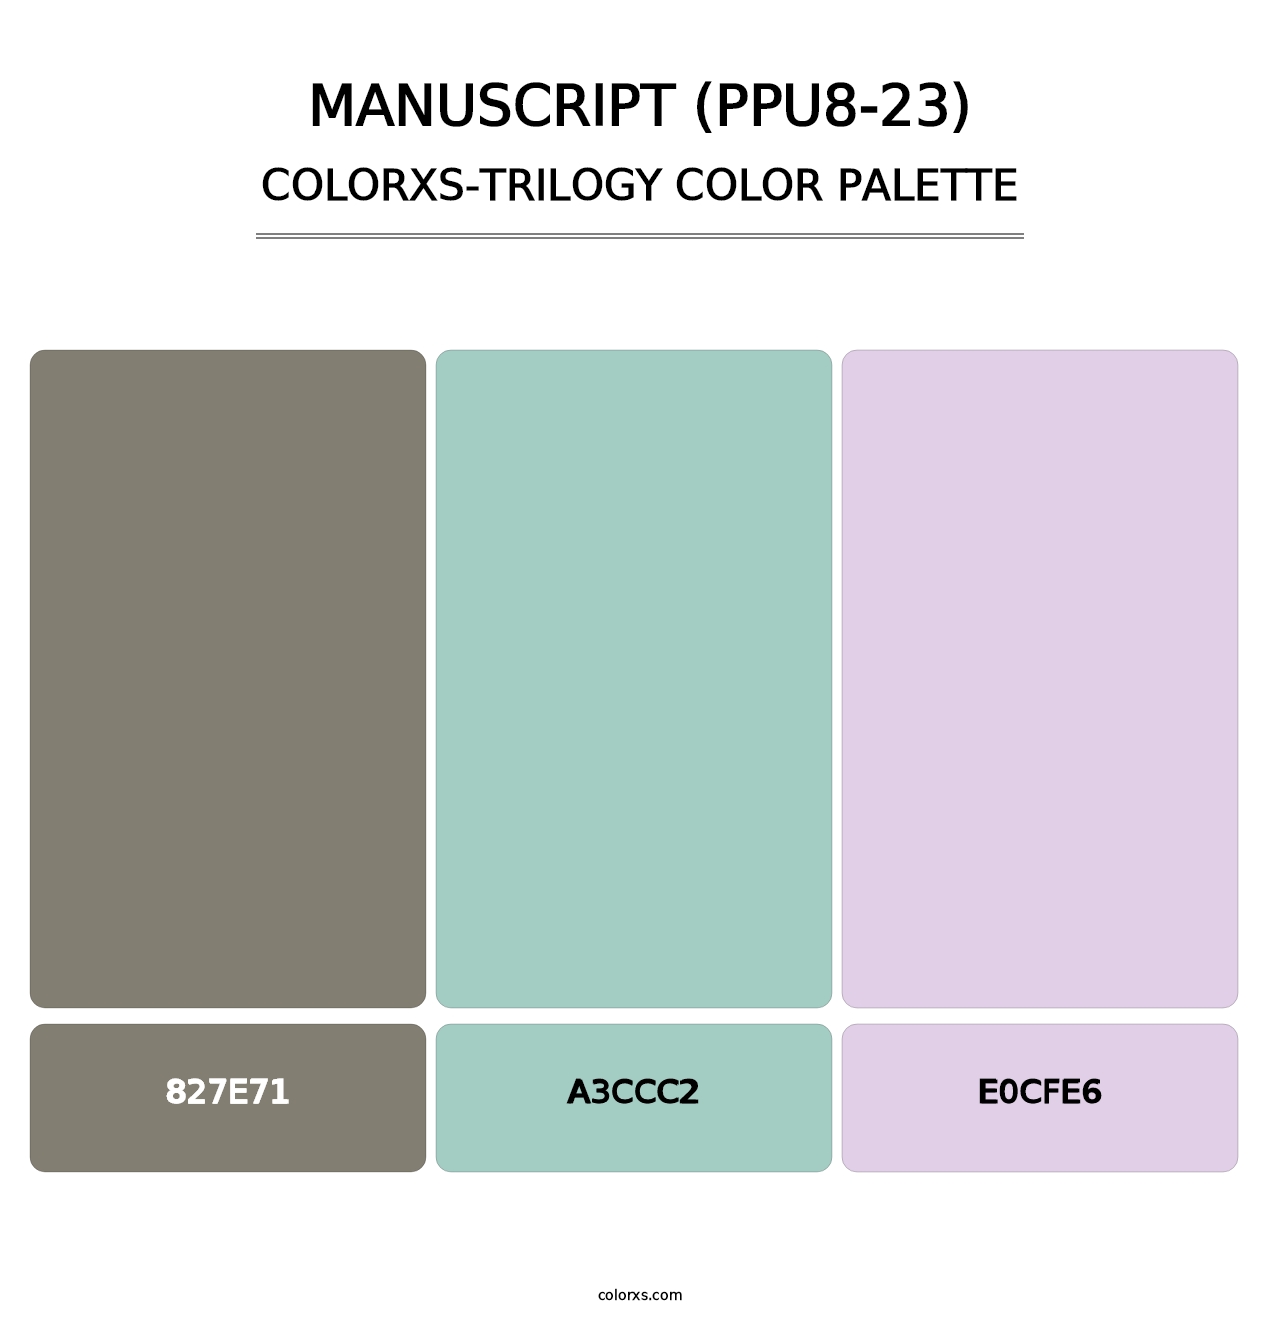 Manuscript (PPU8-23) - Colorxs Trilogy Palette